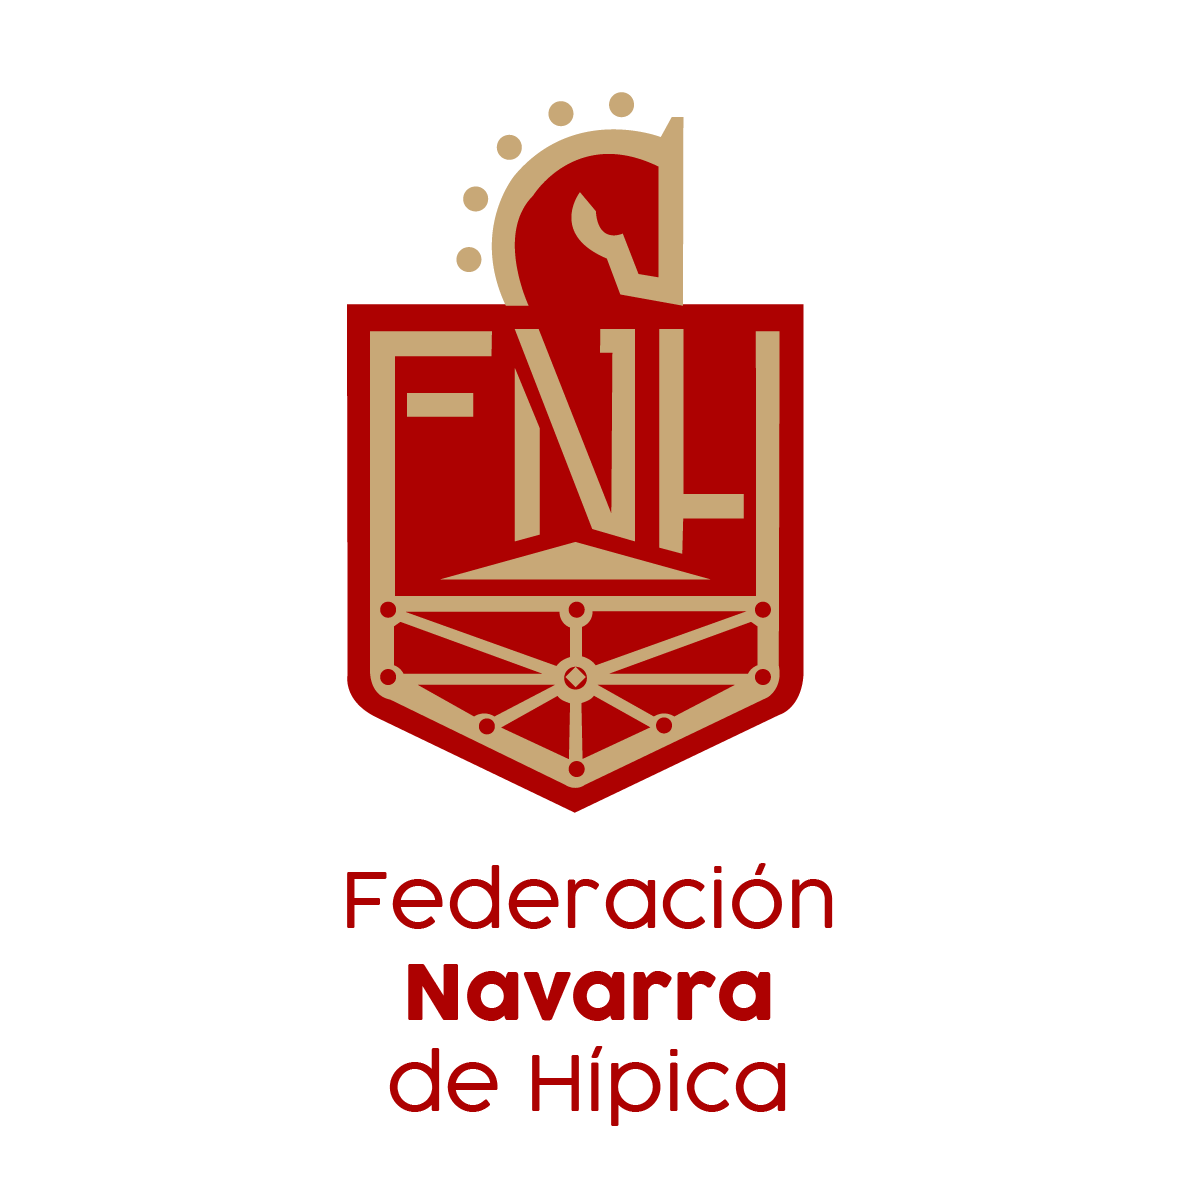 El Presidente y la Junta Directiva de la Federación Navarra de Hípica os desea una Feliz Navidad y un Próspero 2012!